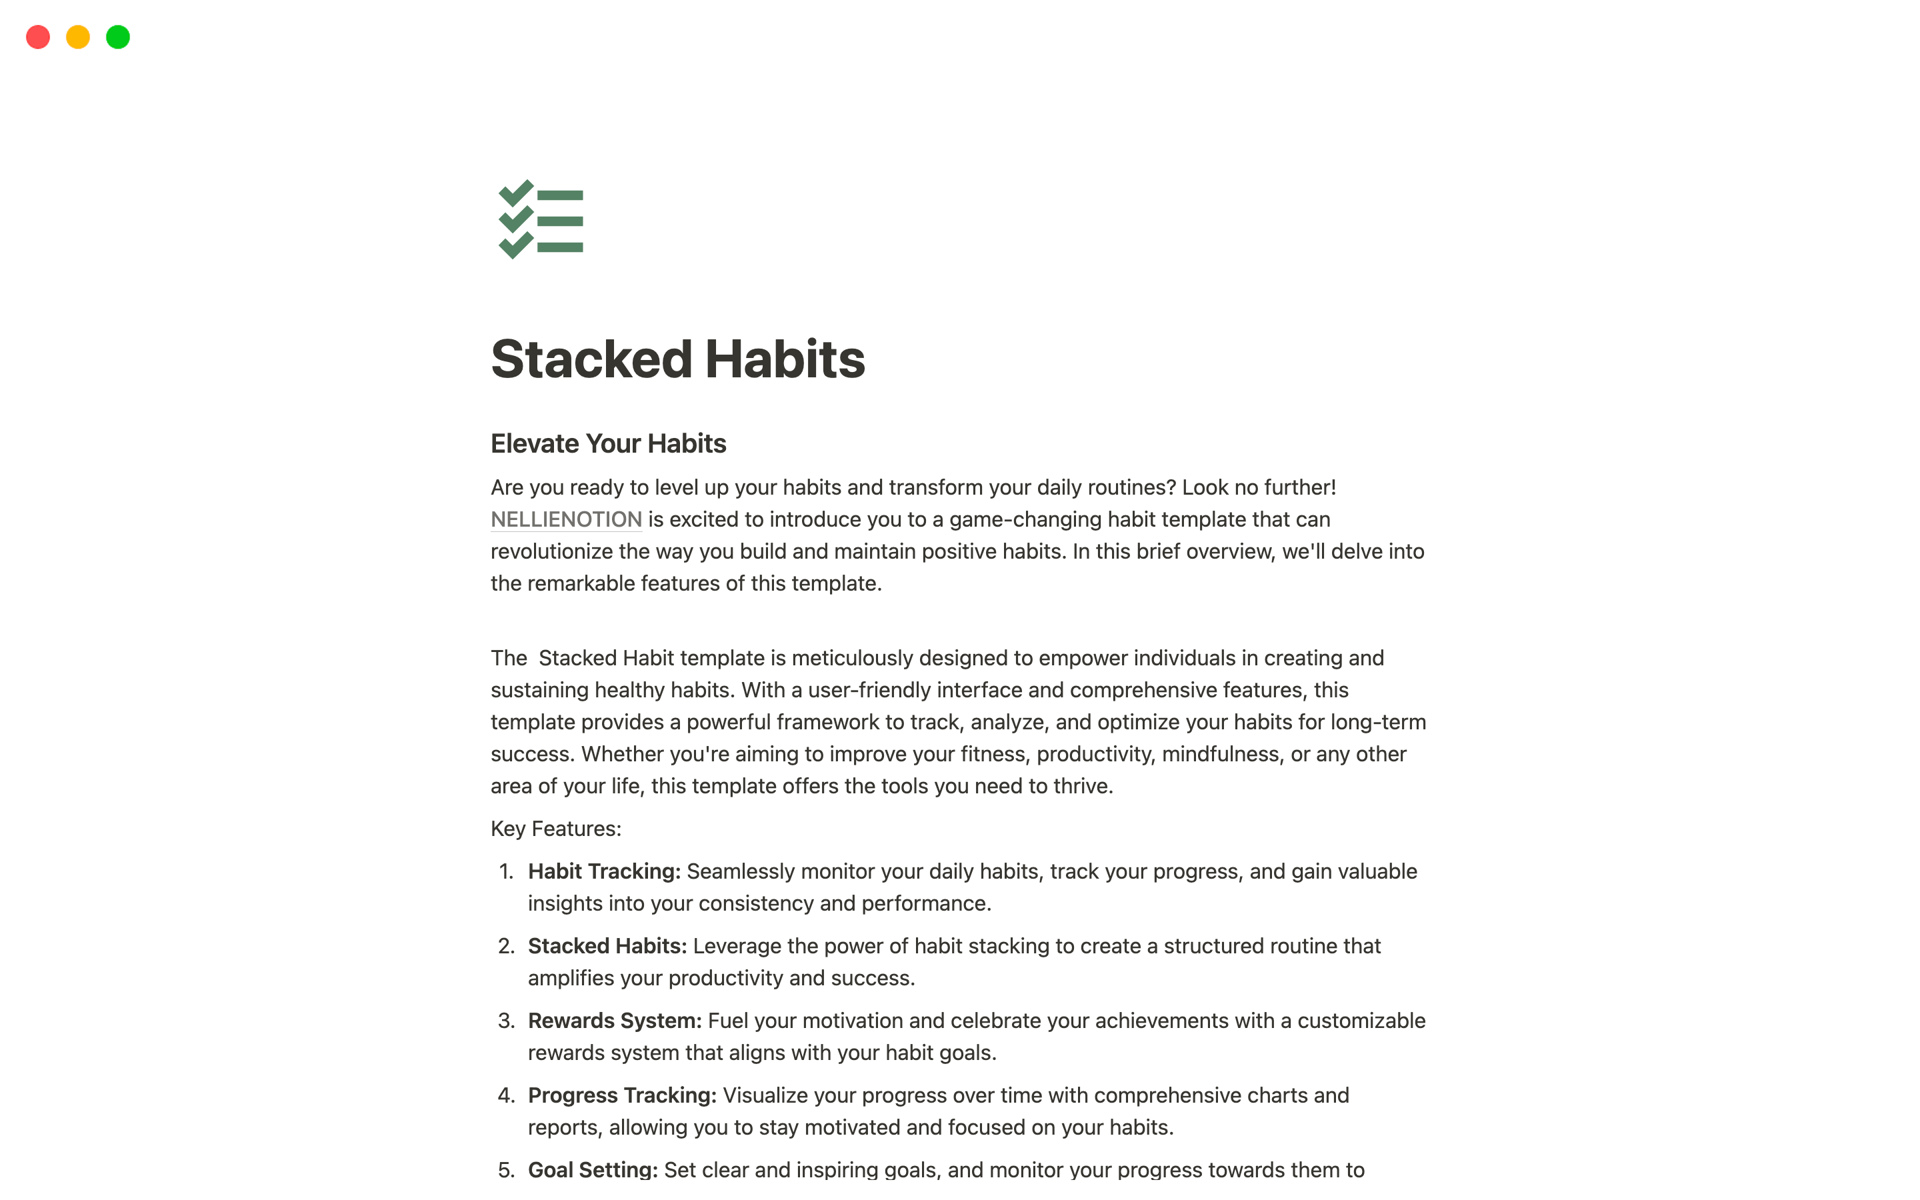 Uma prévia do modelo para Stacked Habits